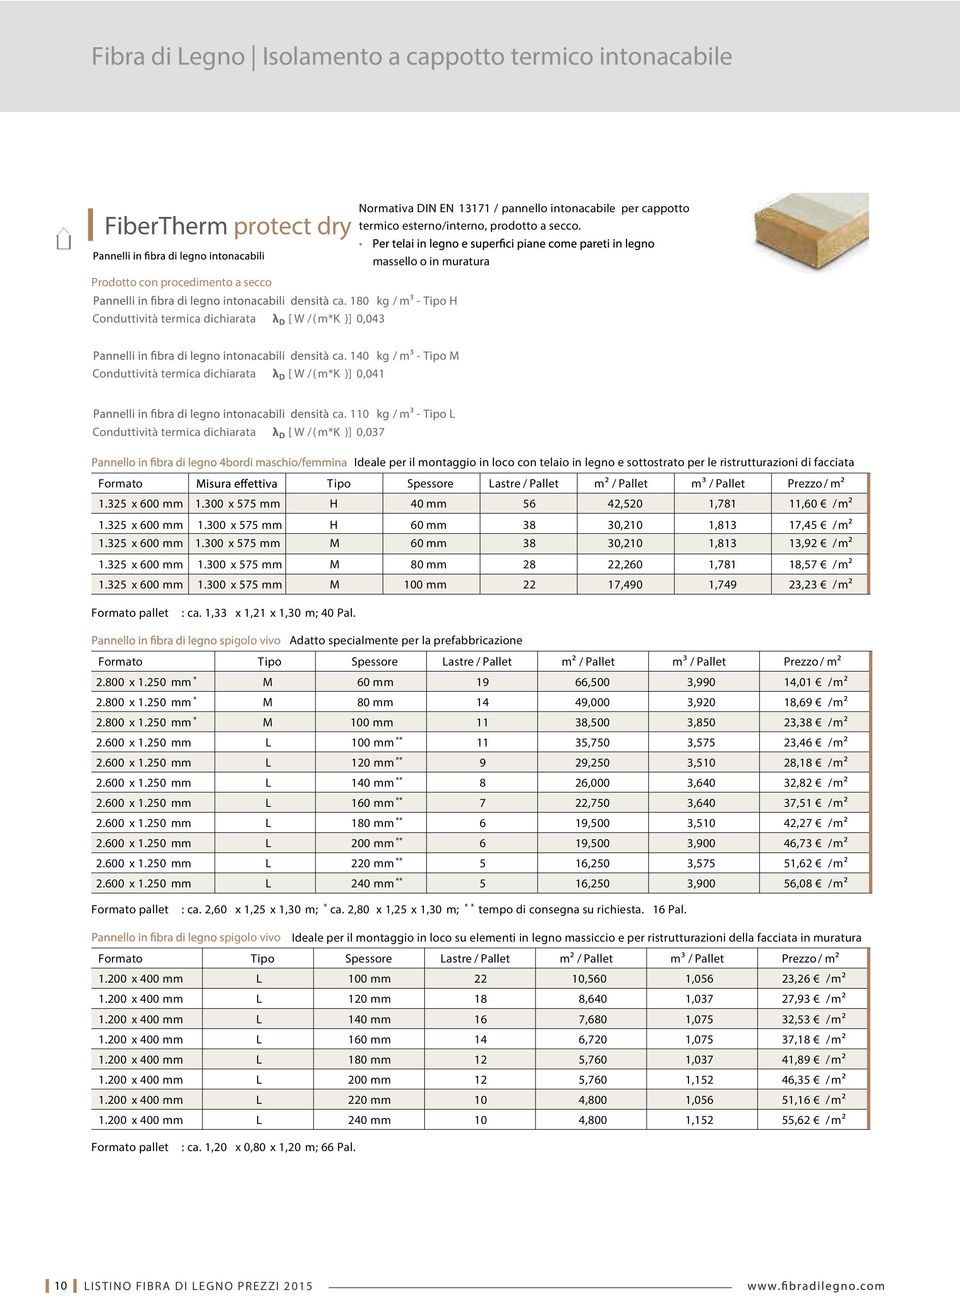 140 kg / m³ - Tipo M Conduttività termica dichiarata λ D [ W / ( m*k )] 0,041 Ideale per il montaggio in loco con telaio in legno e sottostrato per le ristrutturazioni di facciata Formato Tipo